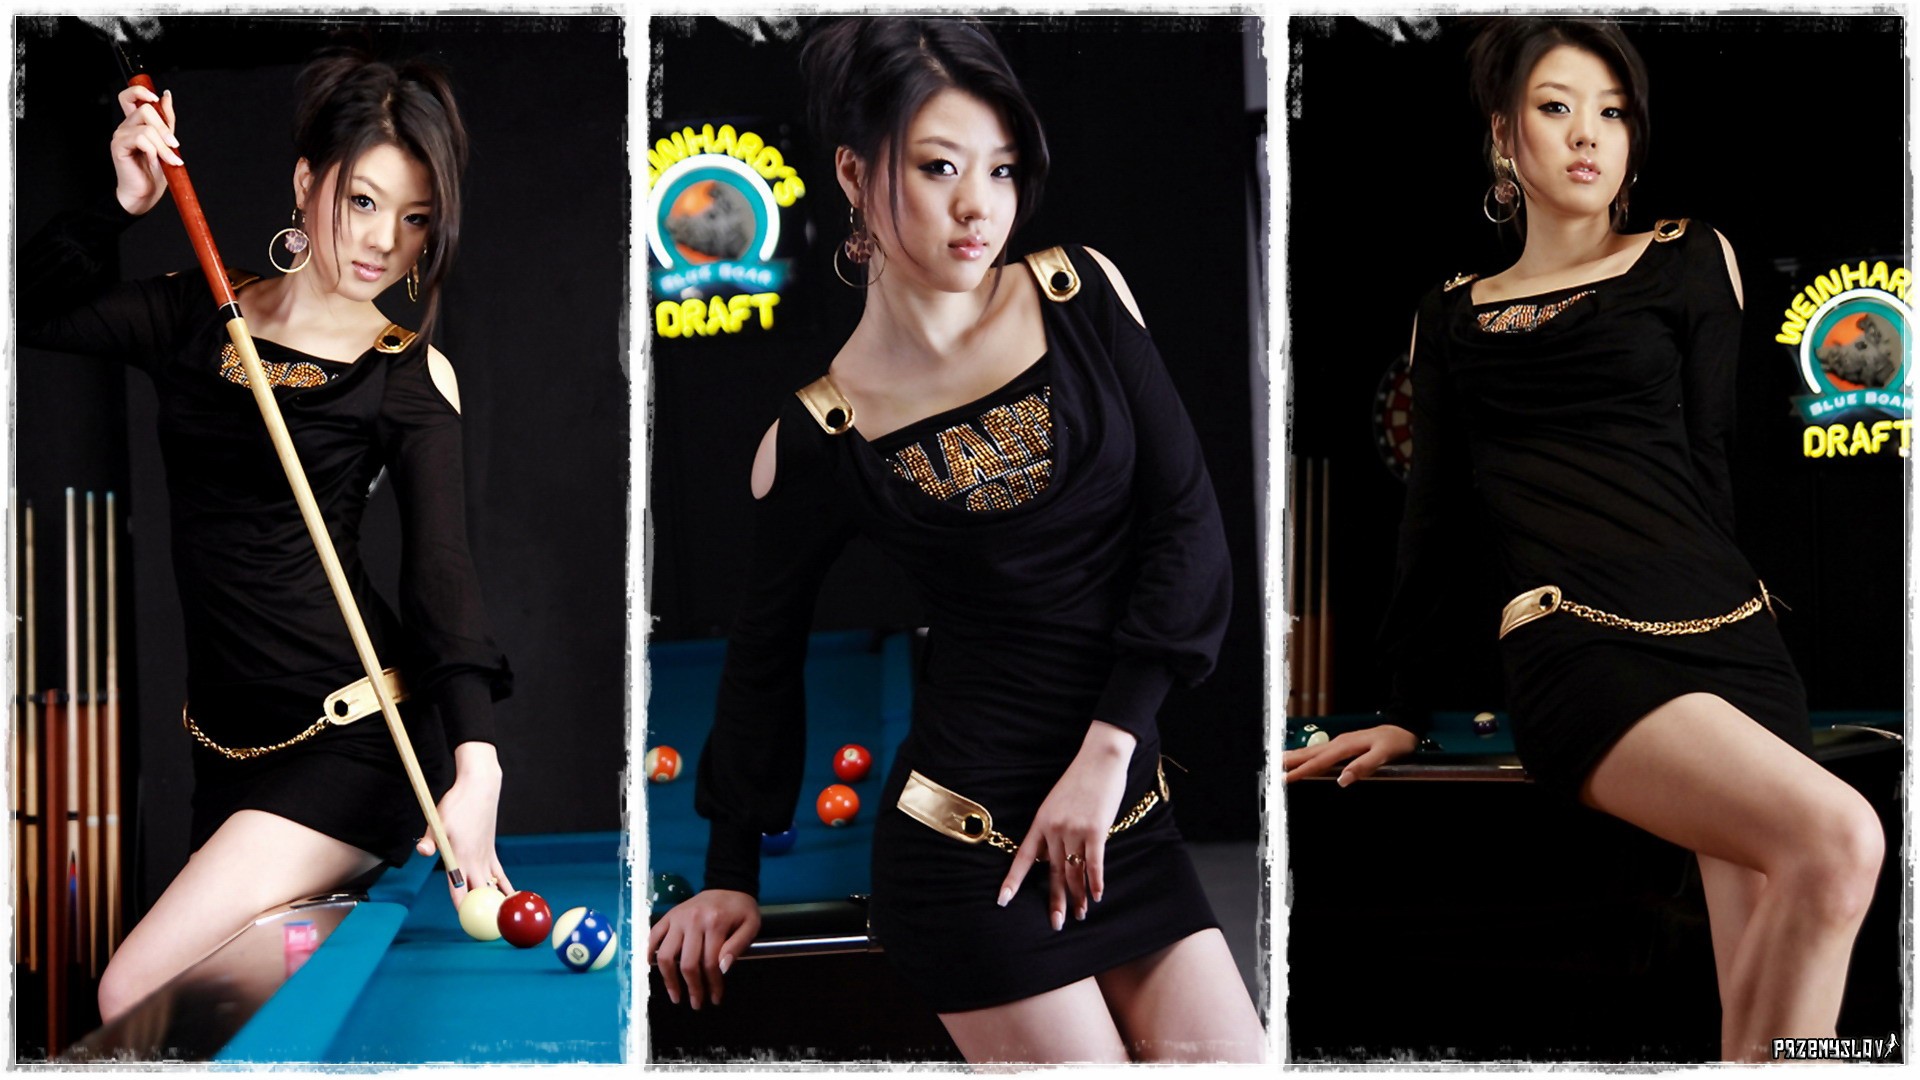 hwang mi hee asian women brunette model Wallpaper